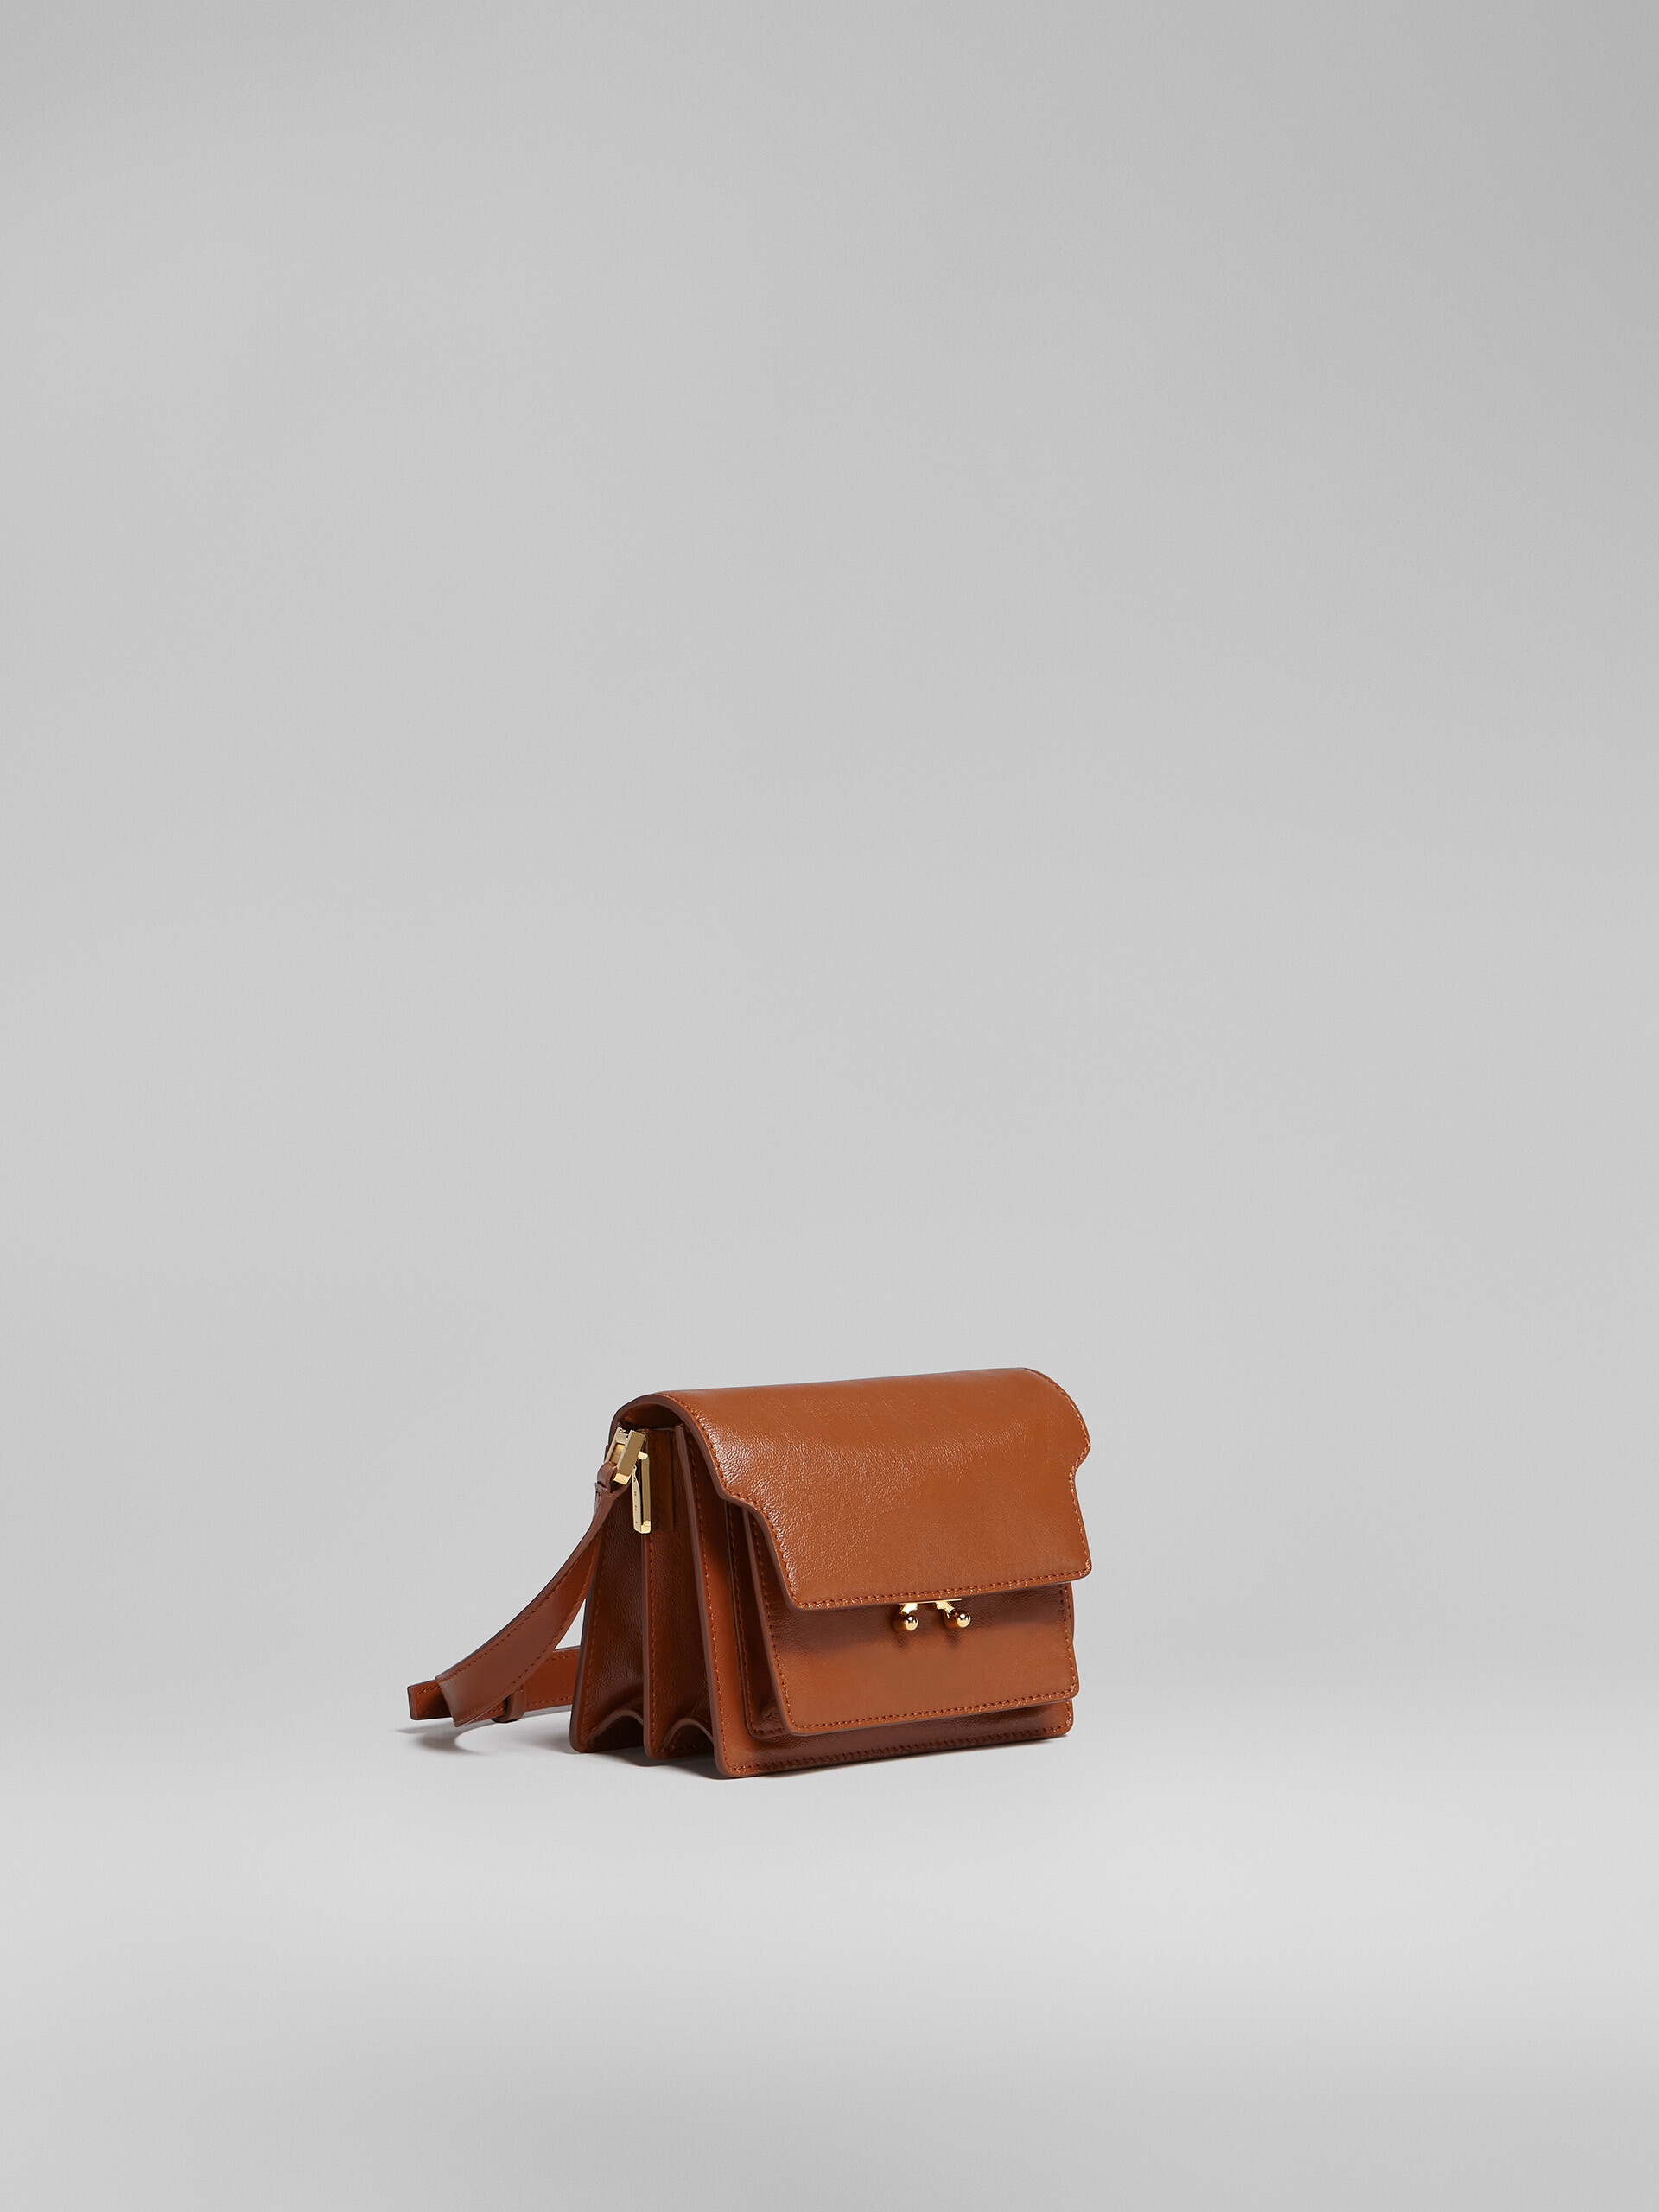 Mini-sac TRUNK SOFT en cuir rose - Sacs portés épaule - Image 6